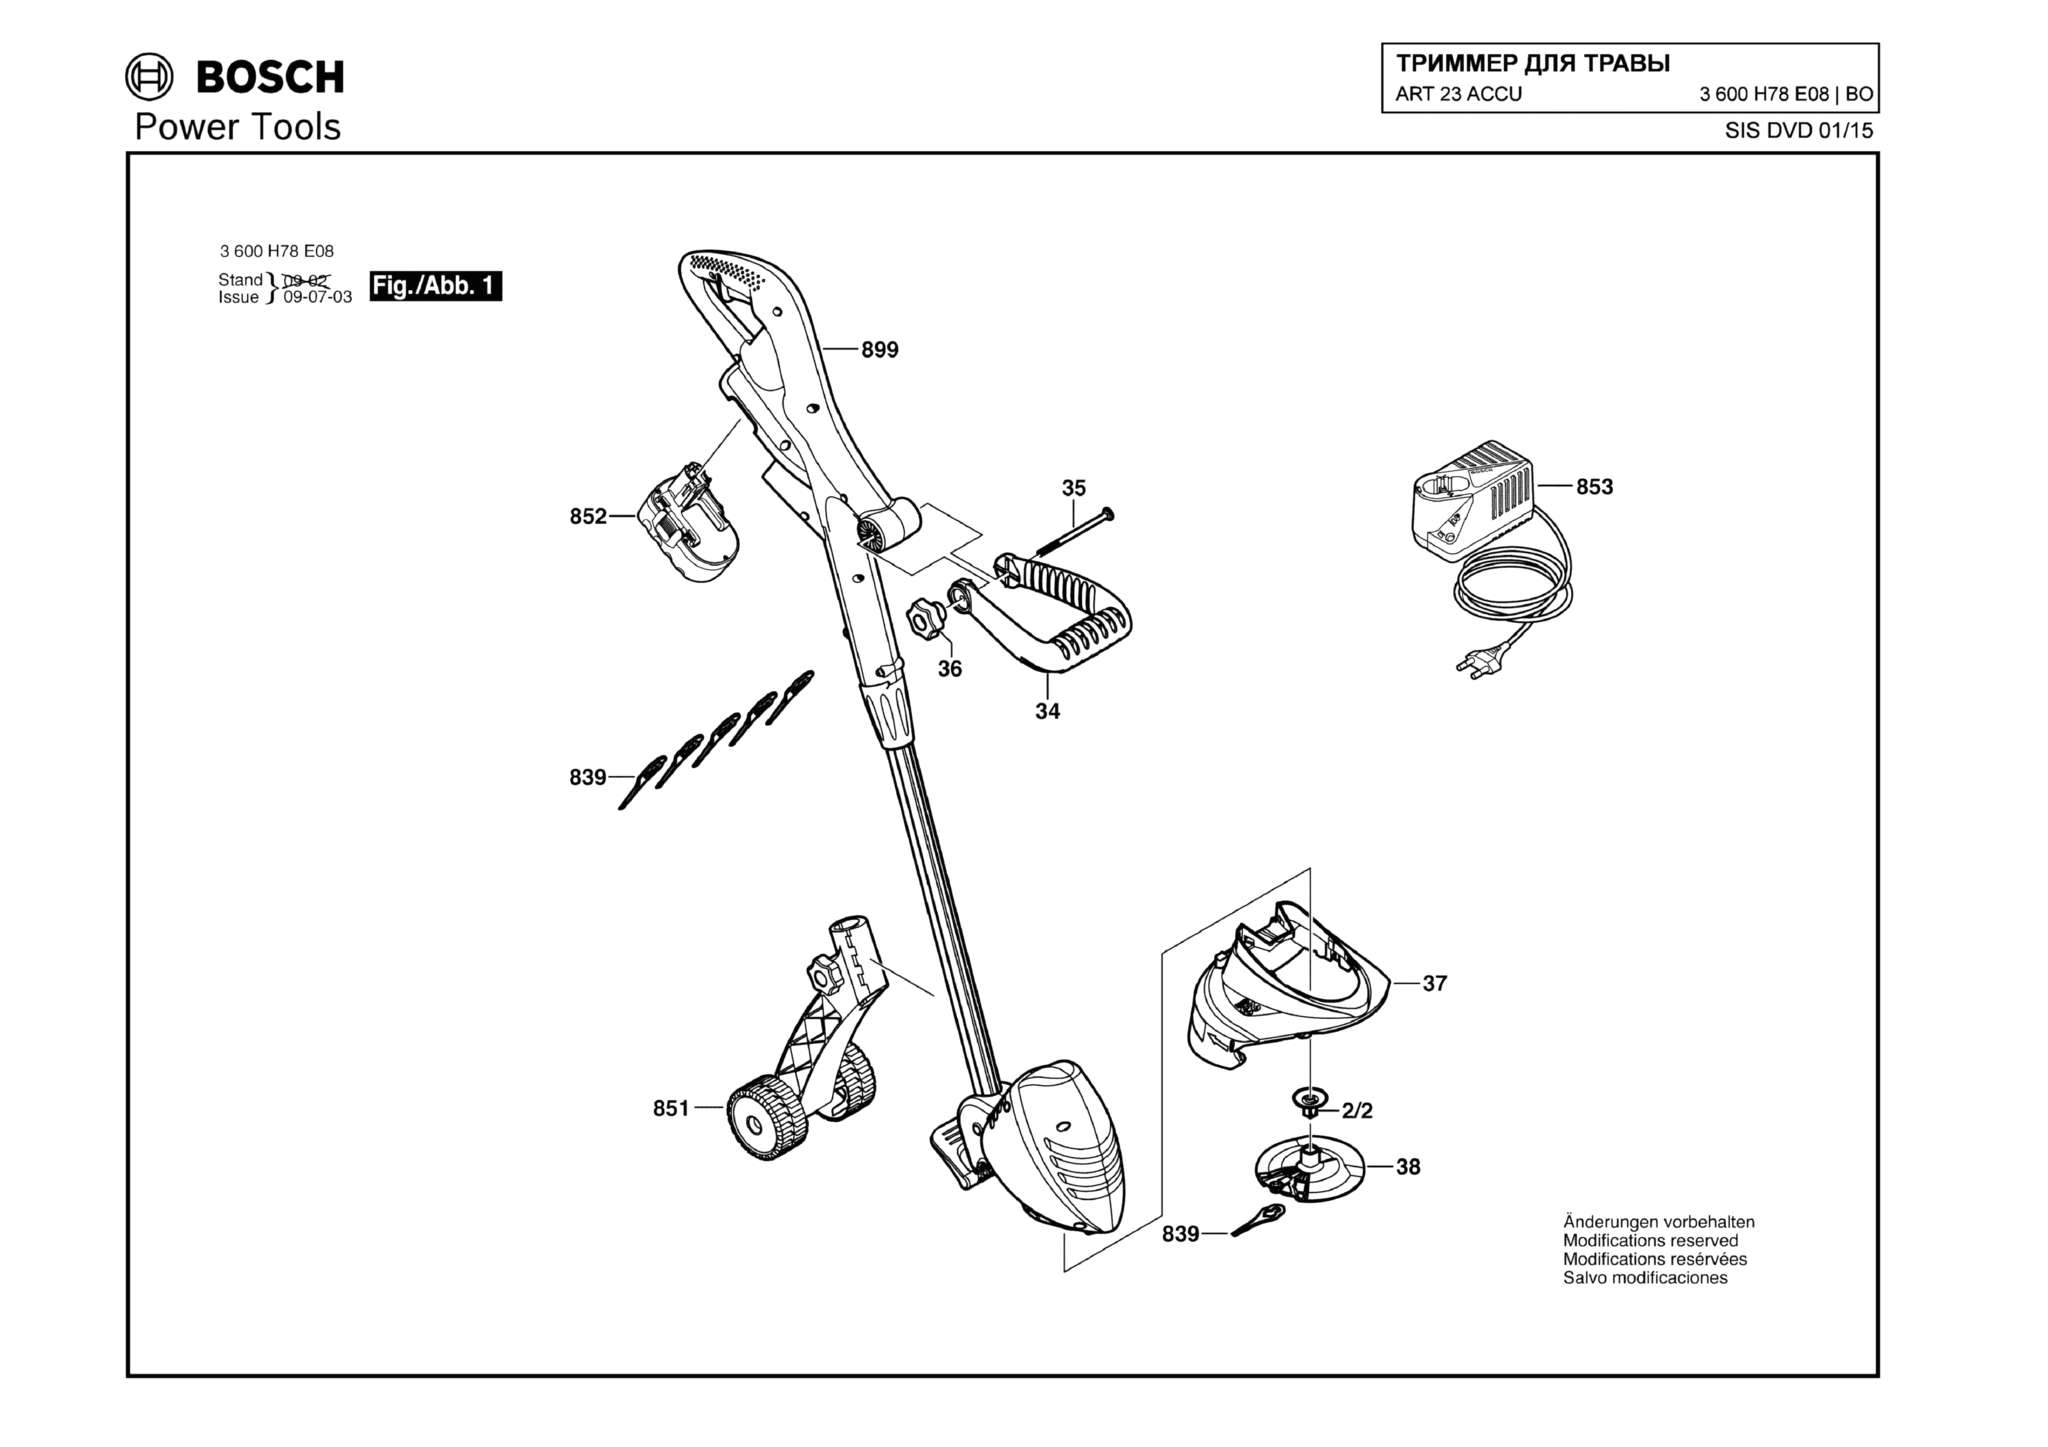 Запчасти, схема и деталировка Bosch ART 23 ACCU (ТИП 3600H78E08)